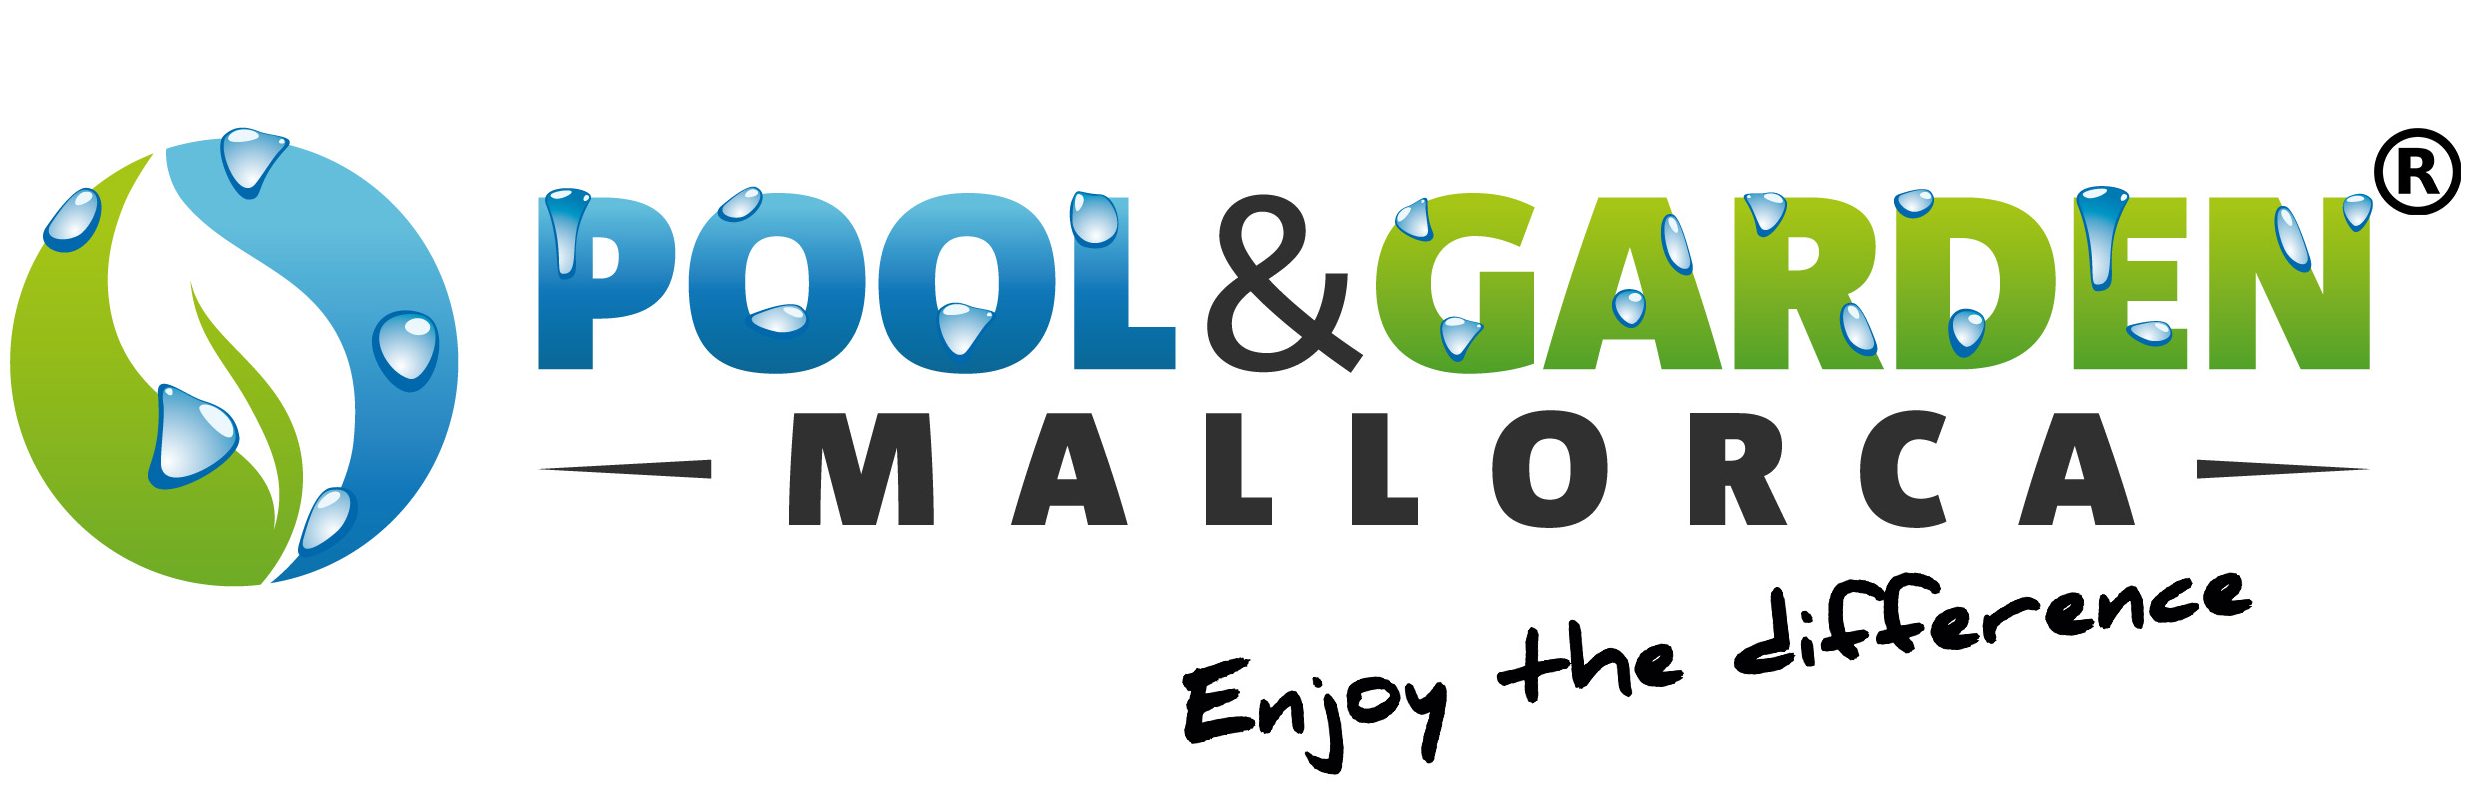 Poolgarden-mallorca_logo-web